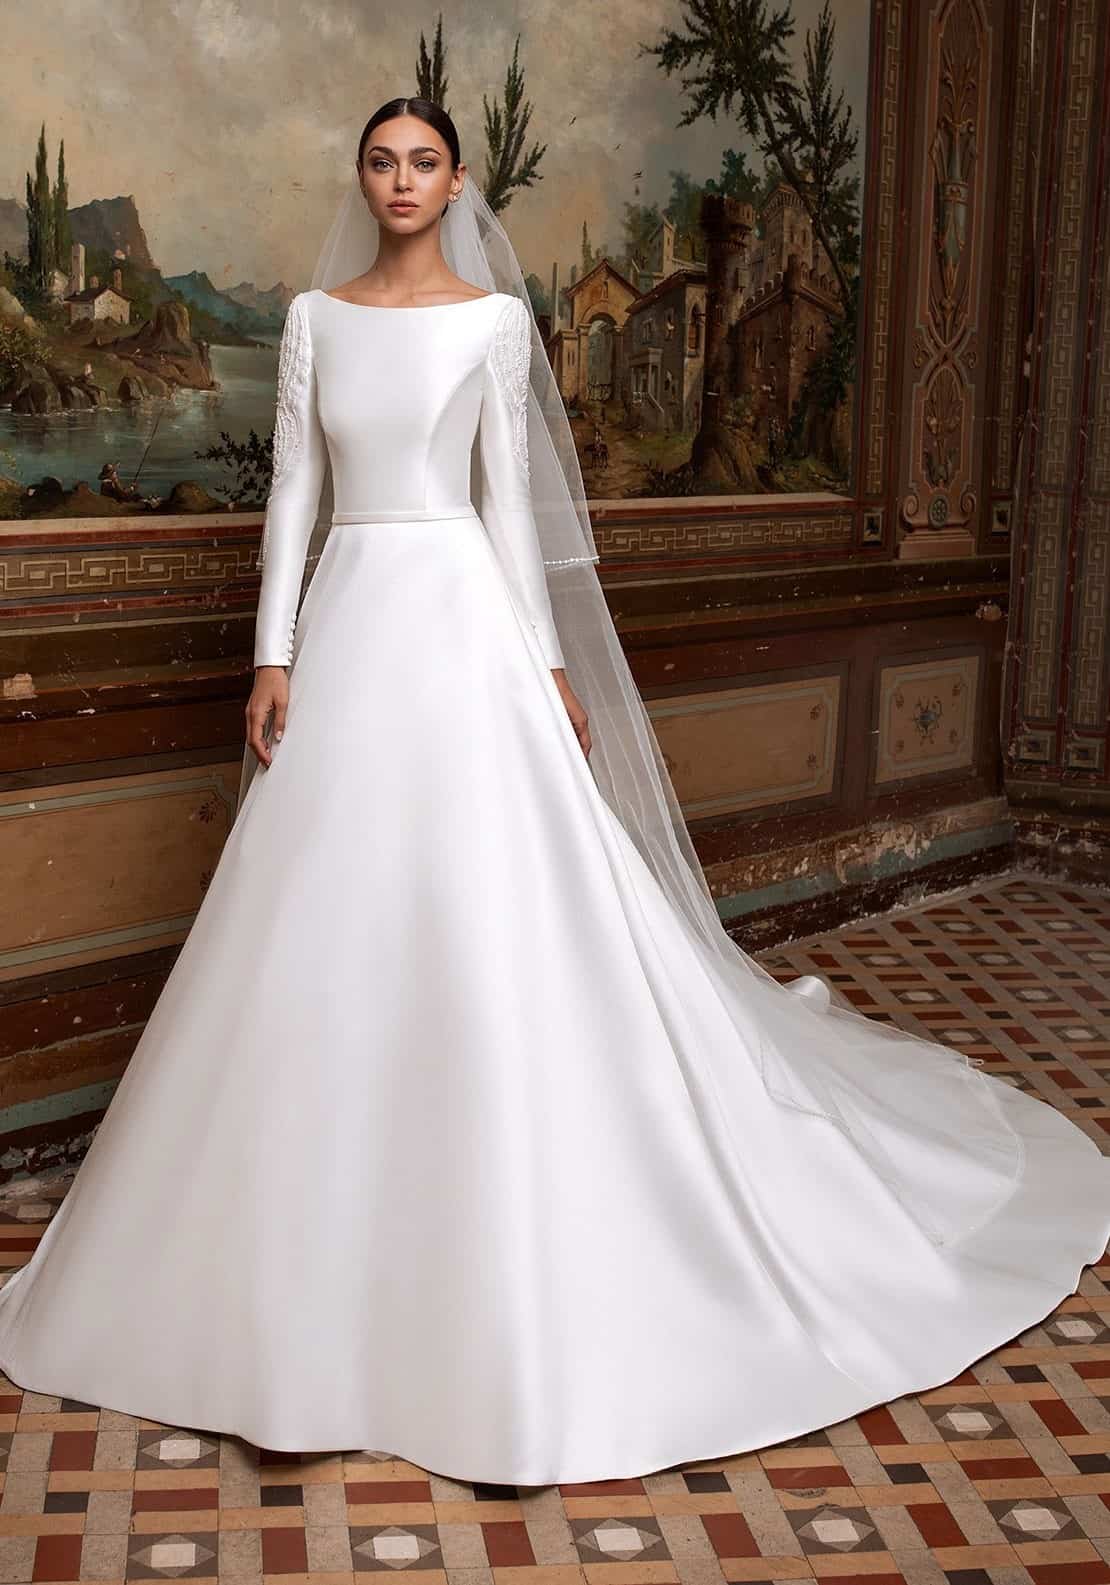 Tolkning av en drøm om en hvit kjole for en gift kvinne